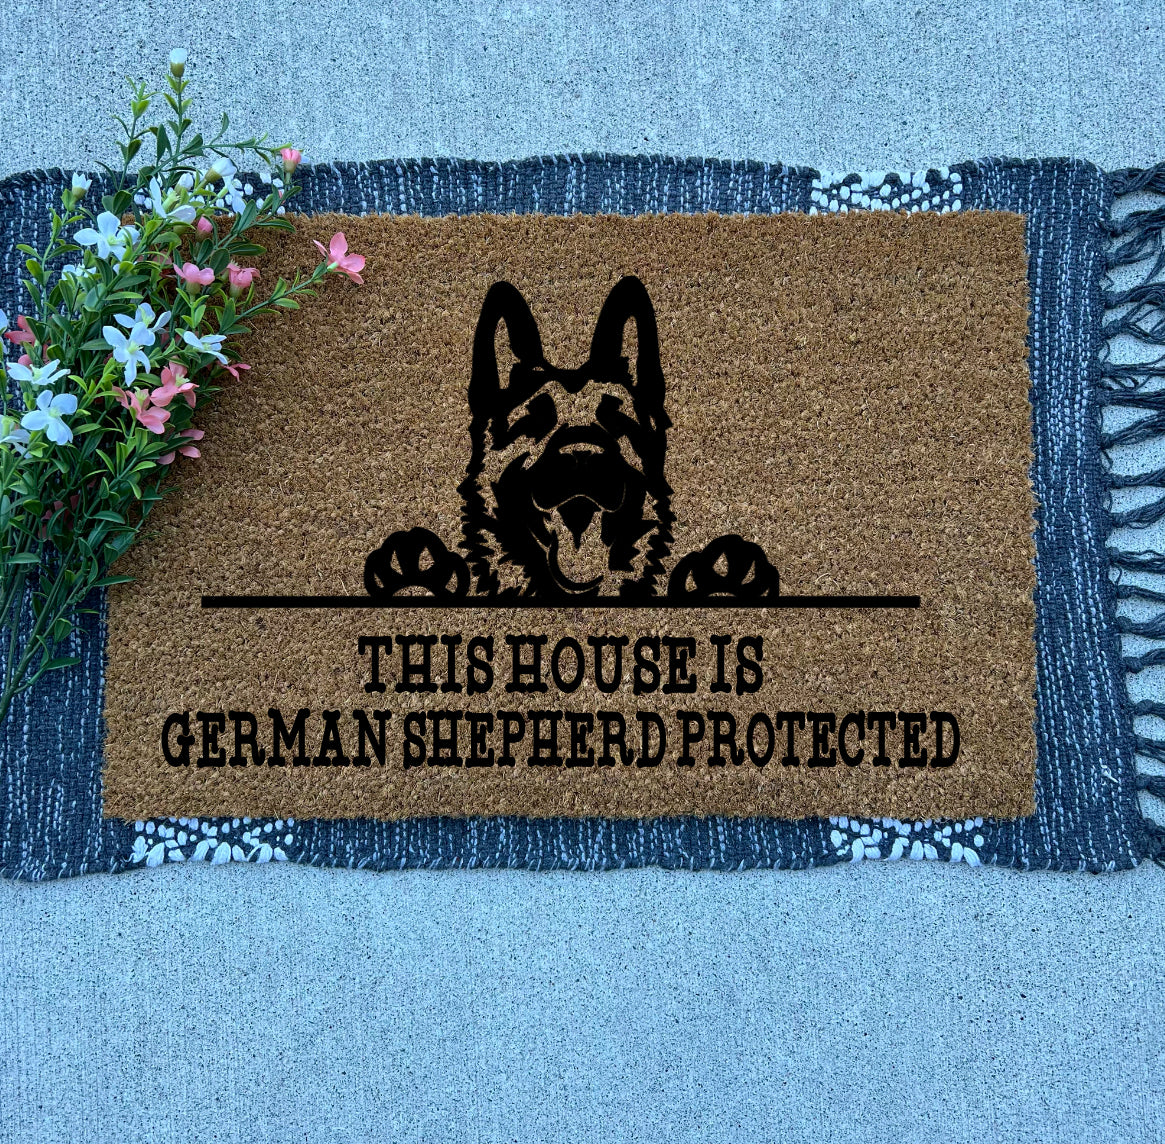 German Shepherd Protected